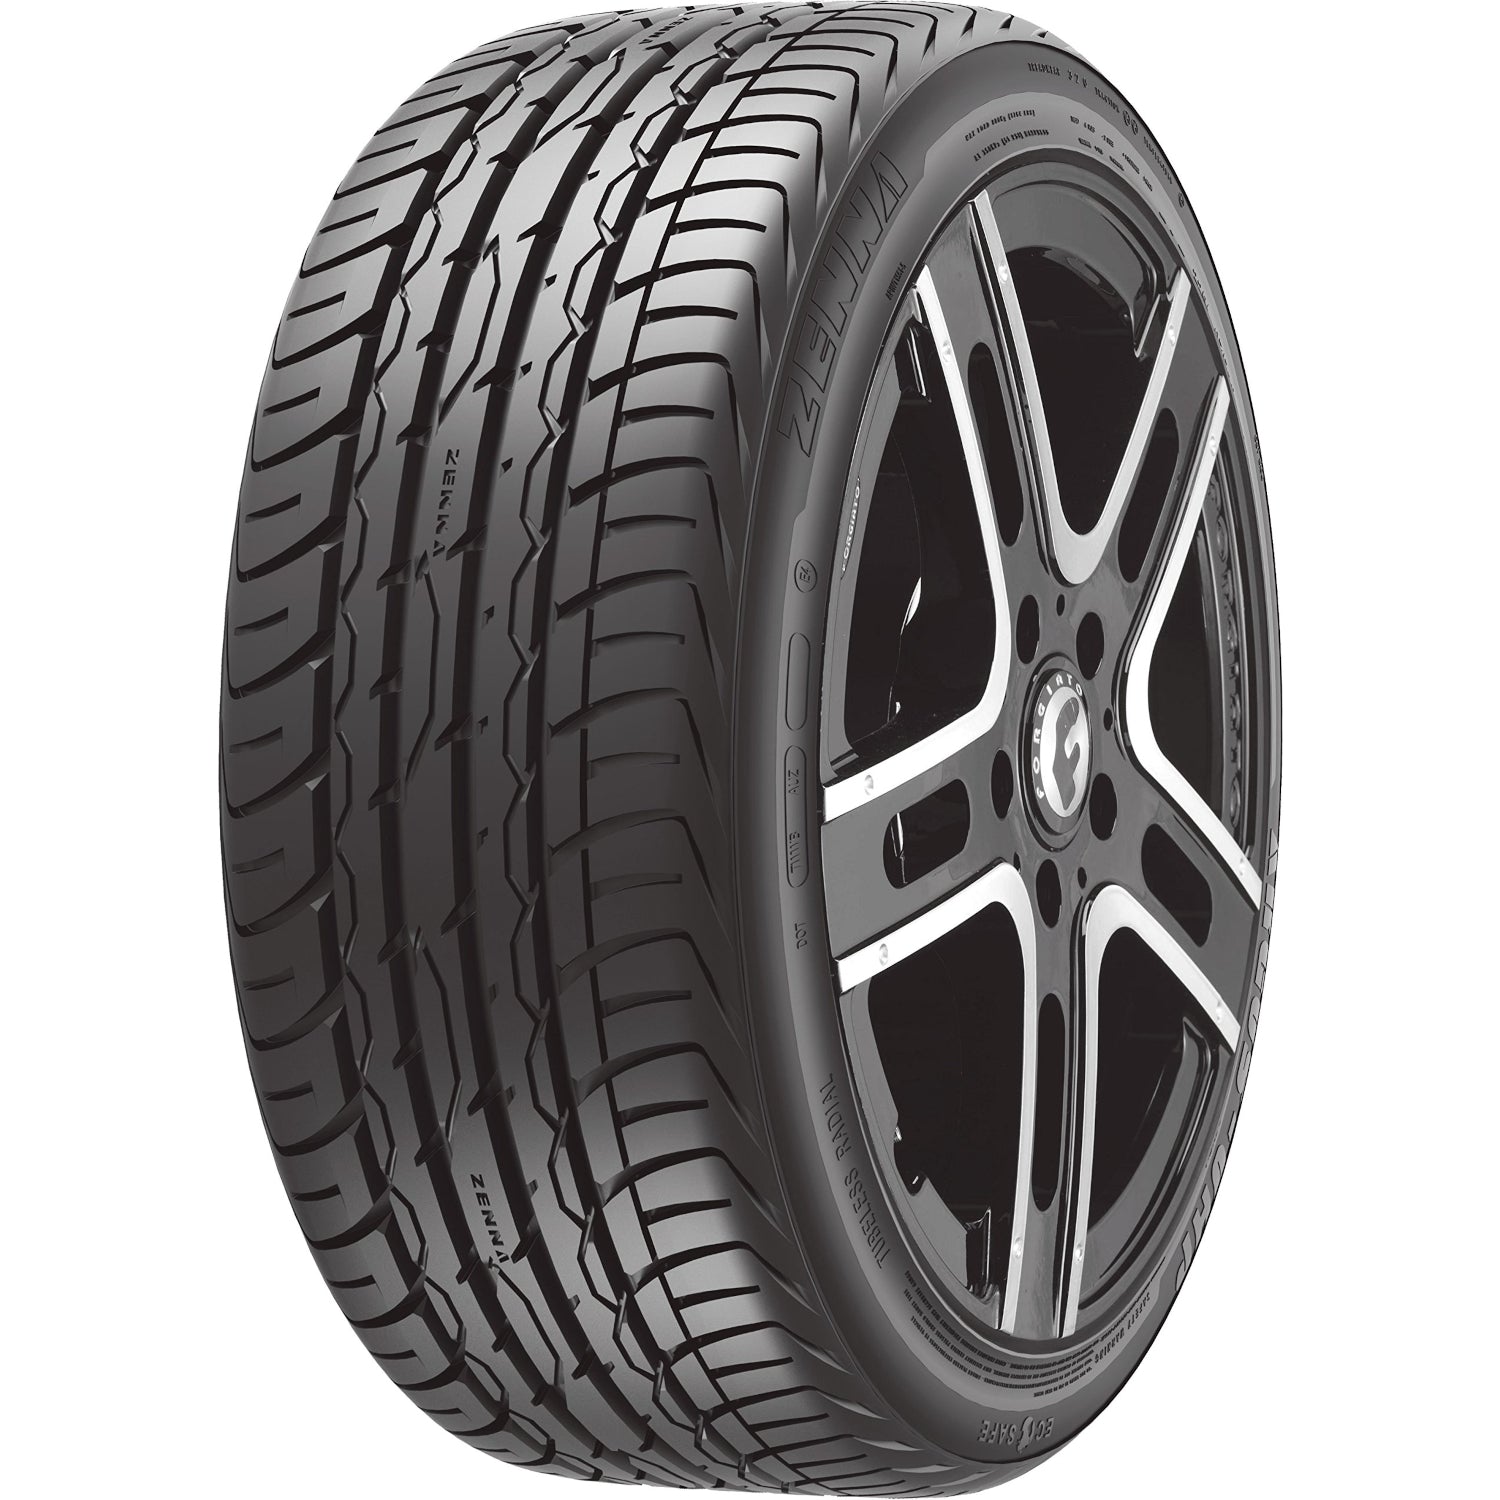 Zenna Argus UHP 285/45ZR22 (32.1x11.2R 22) Tires